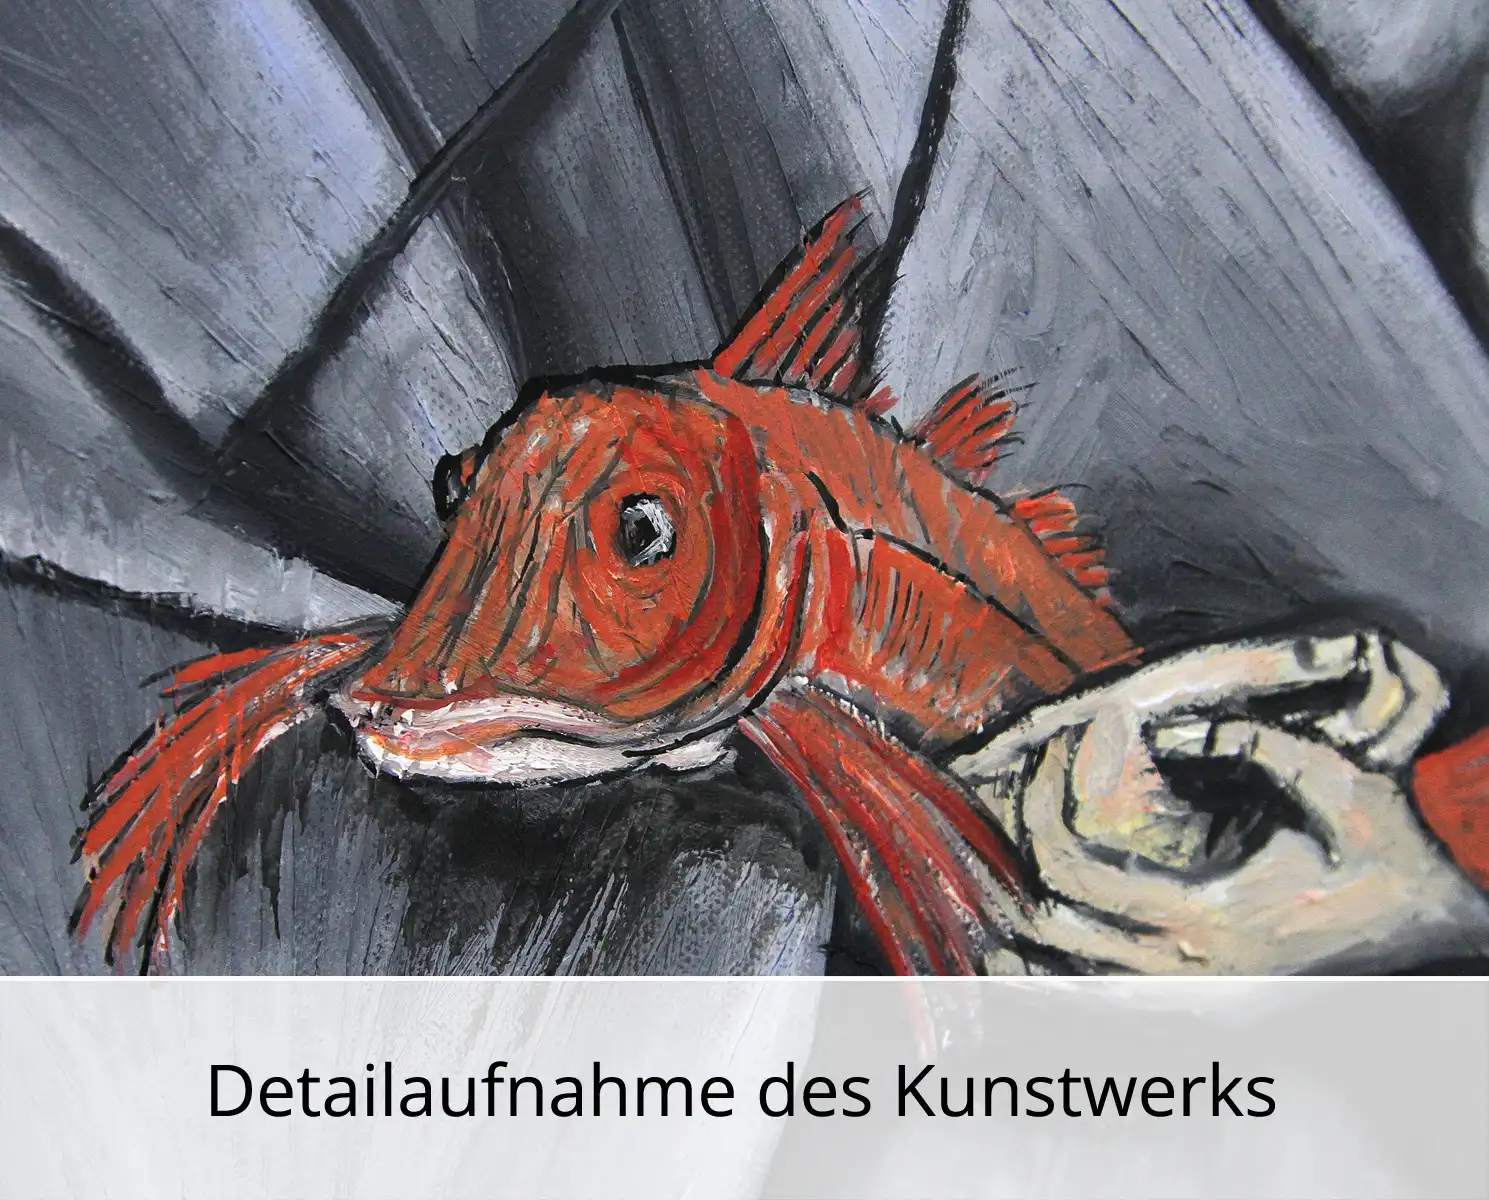 C. Blechschmidt: "Die Fischerin", Original/Unikat, zeitgenössisches Ölgemälde